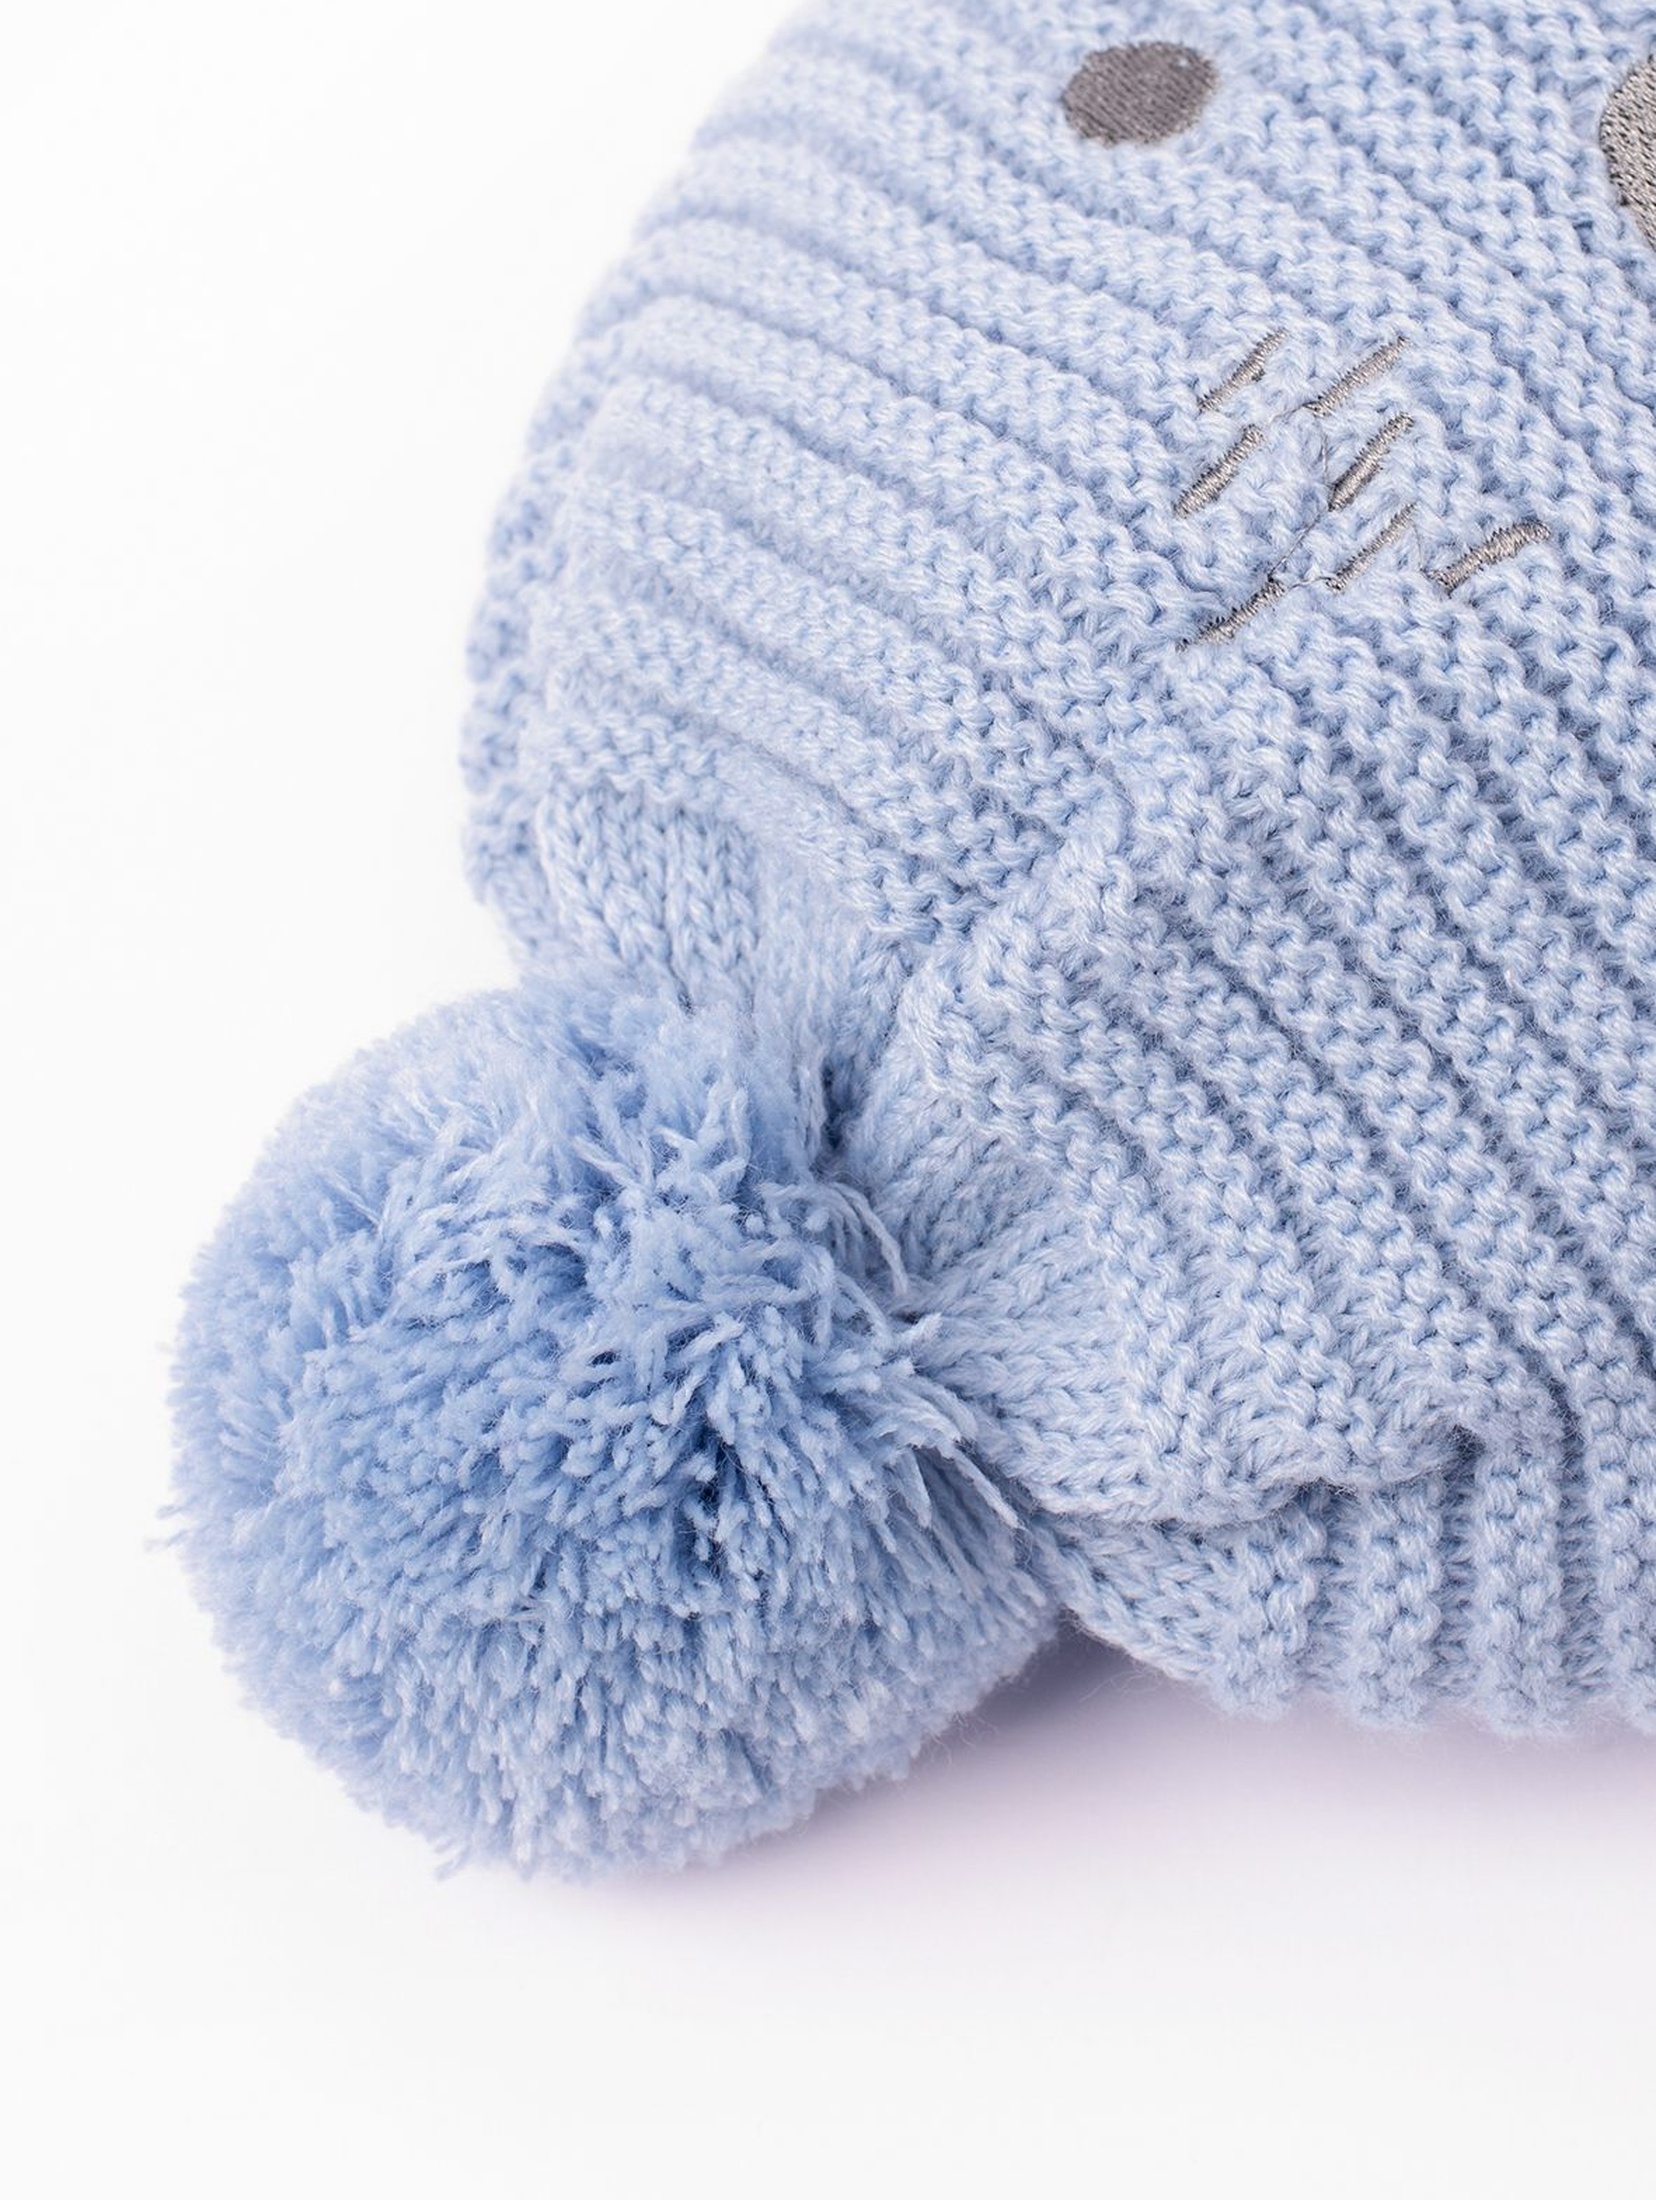 Czapka zimowa dla niemowlaka- wiązana pod szyją